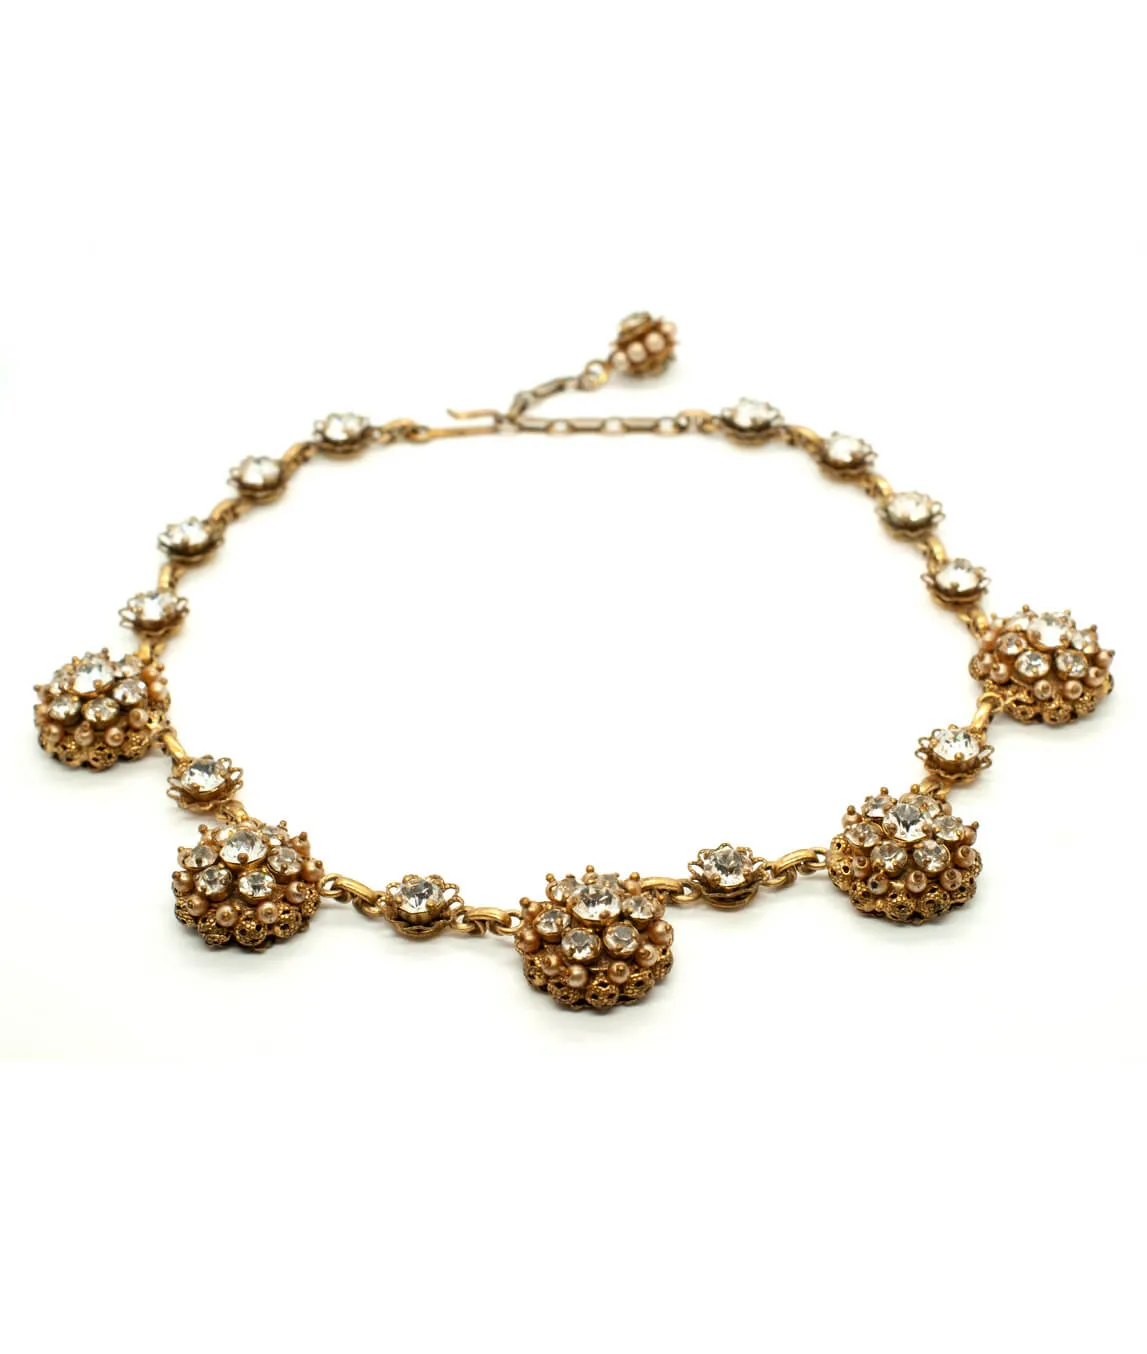 Necklace by Kramer for Dior